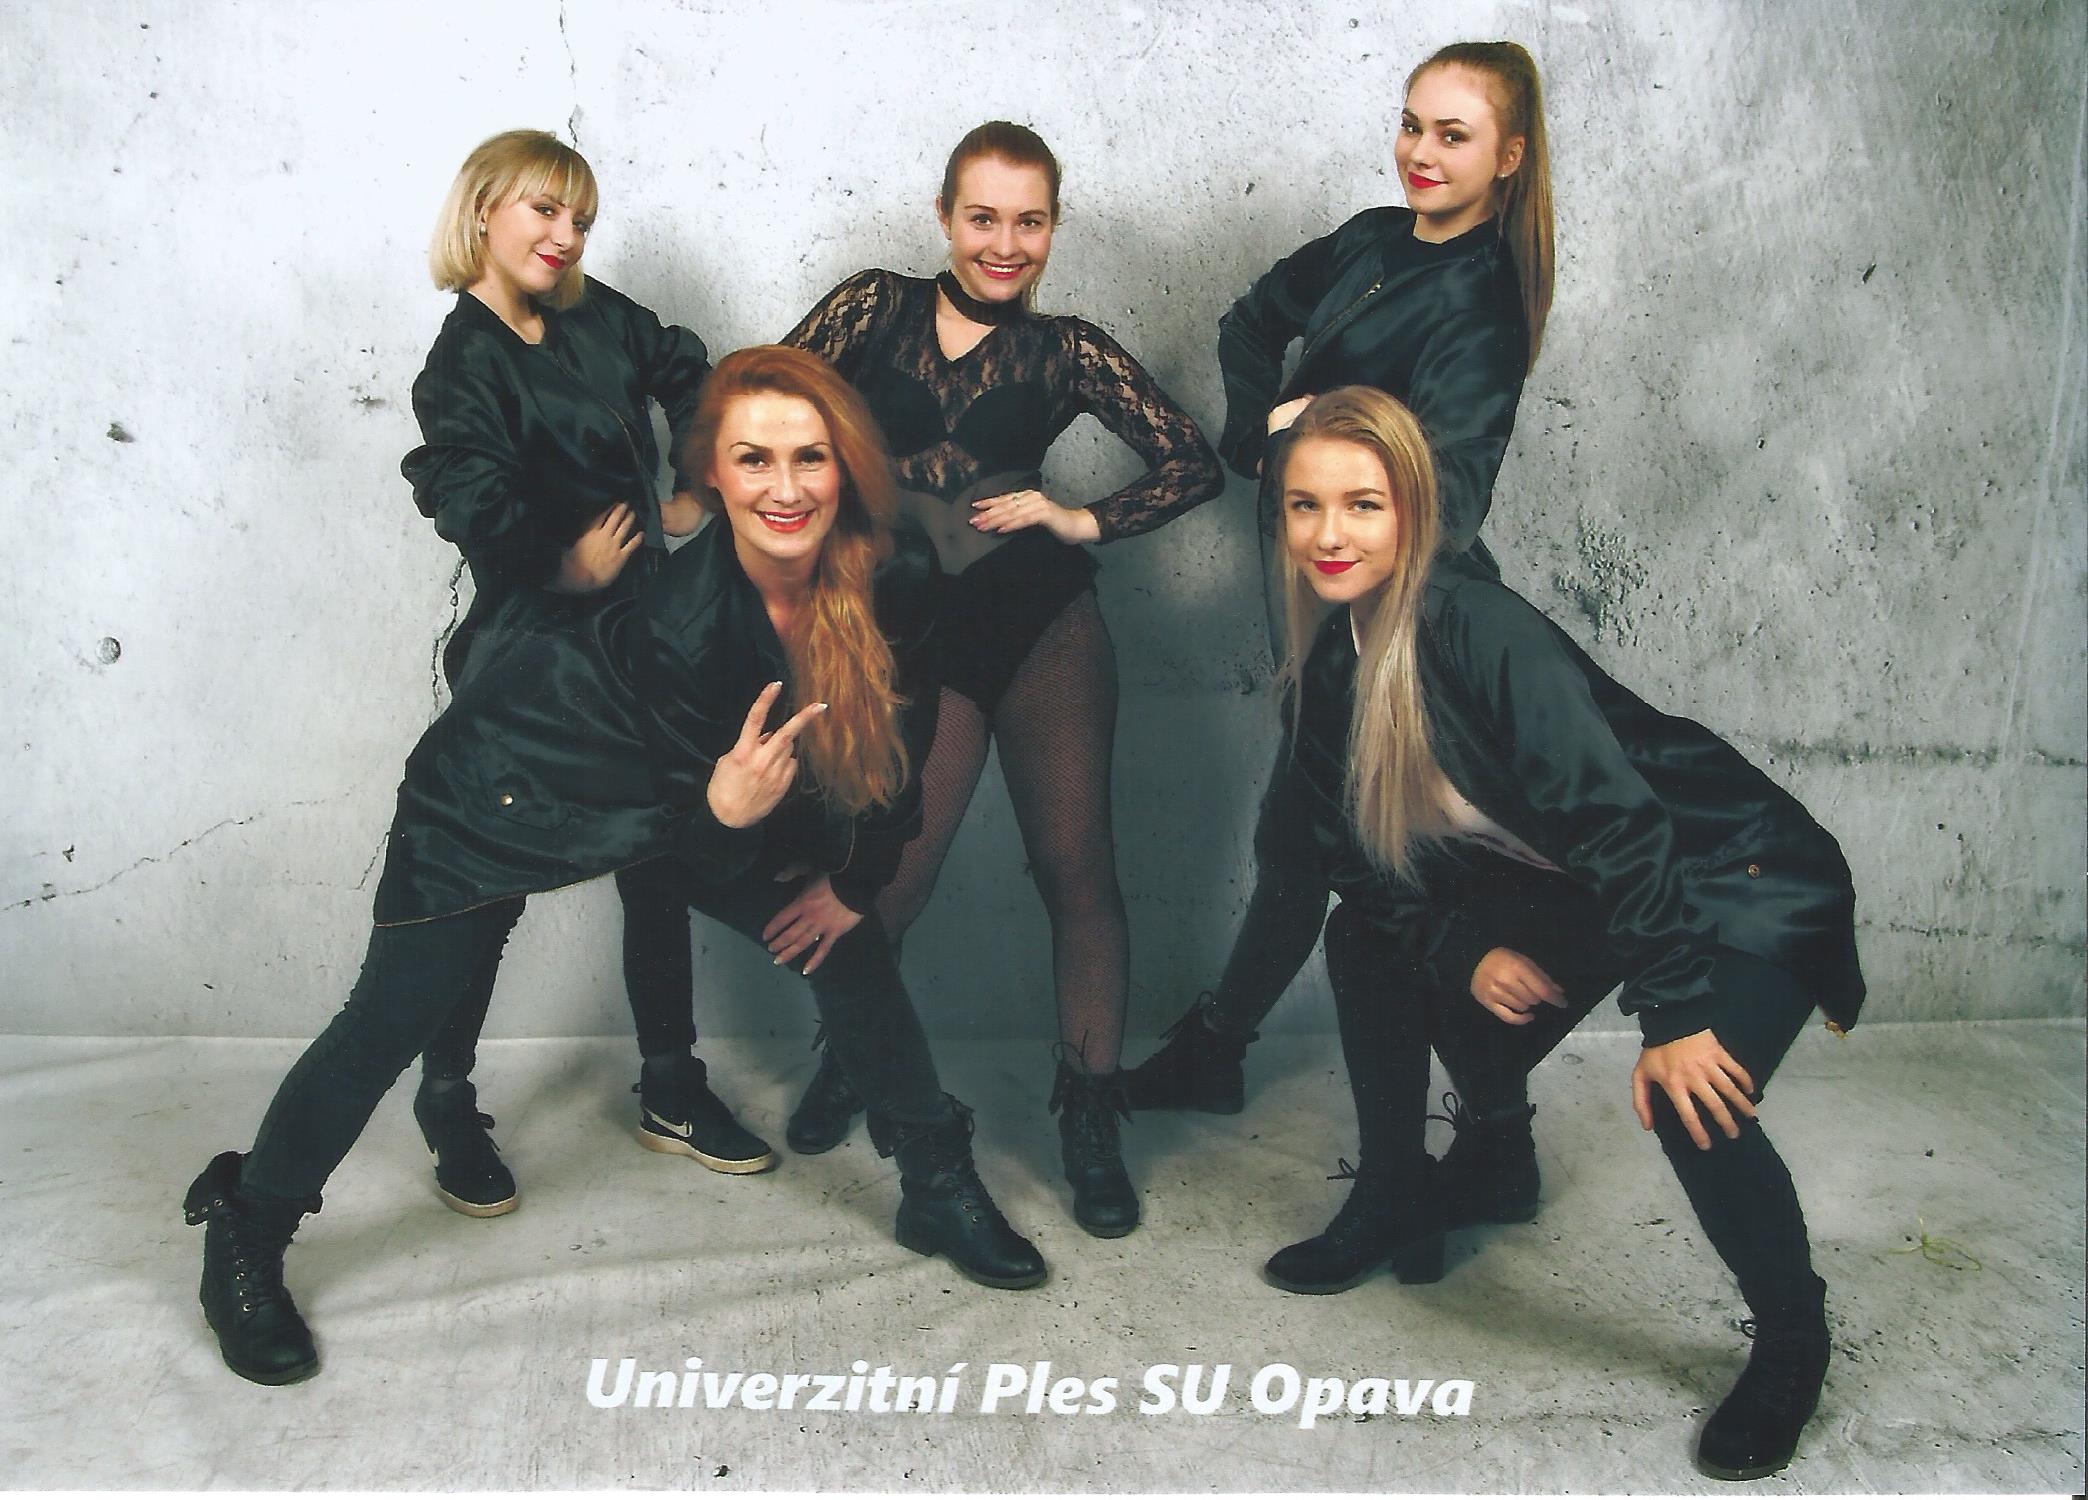 Ples Slezské univerzity